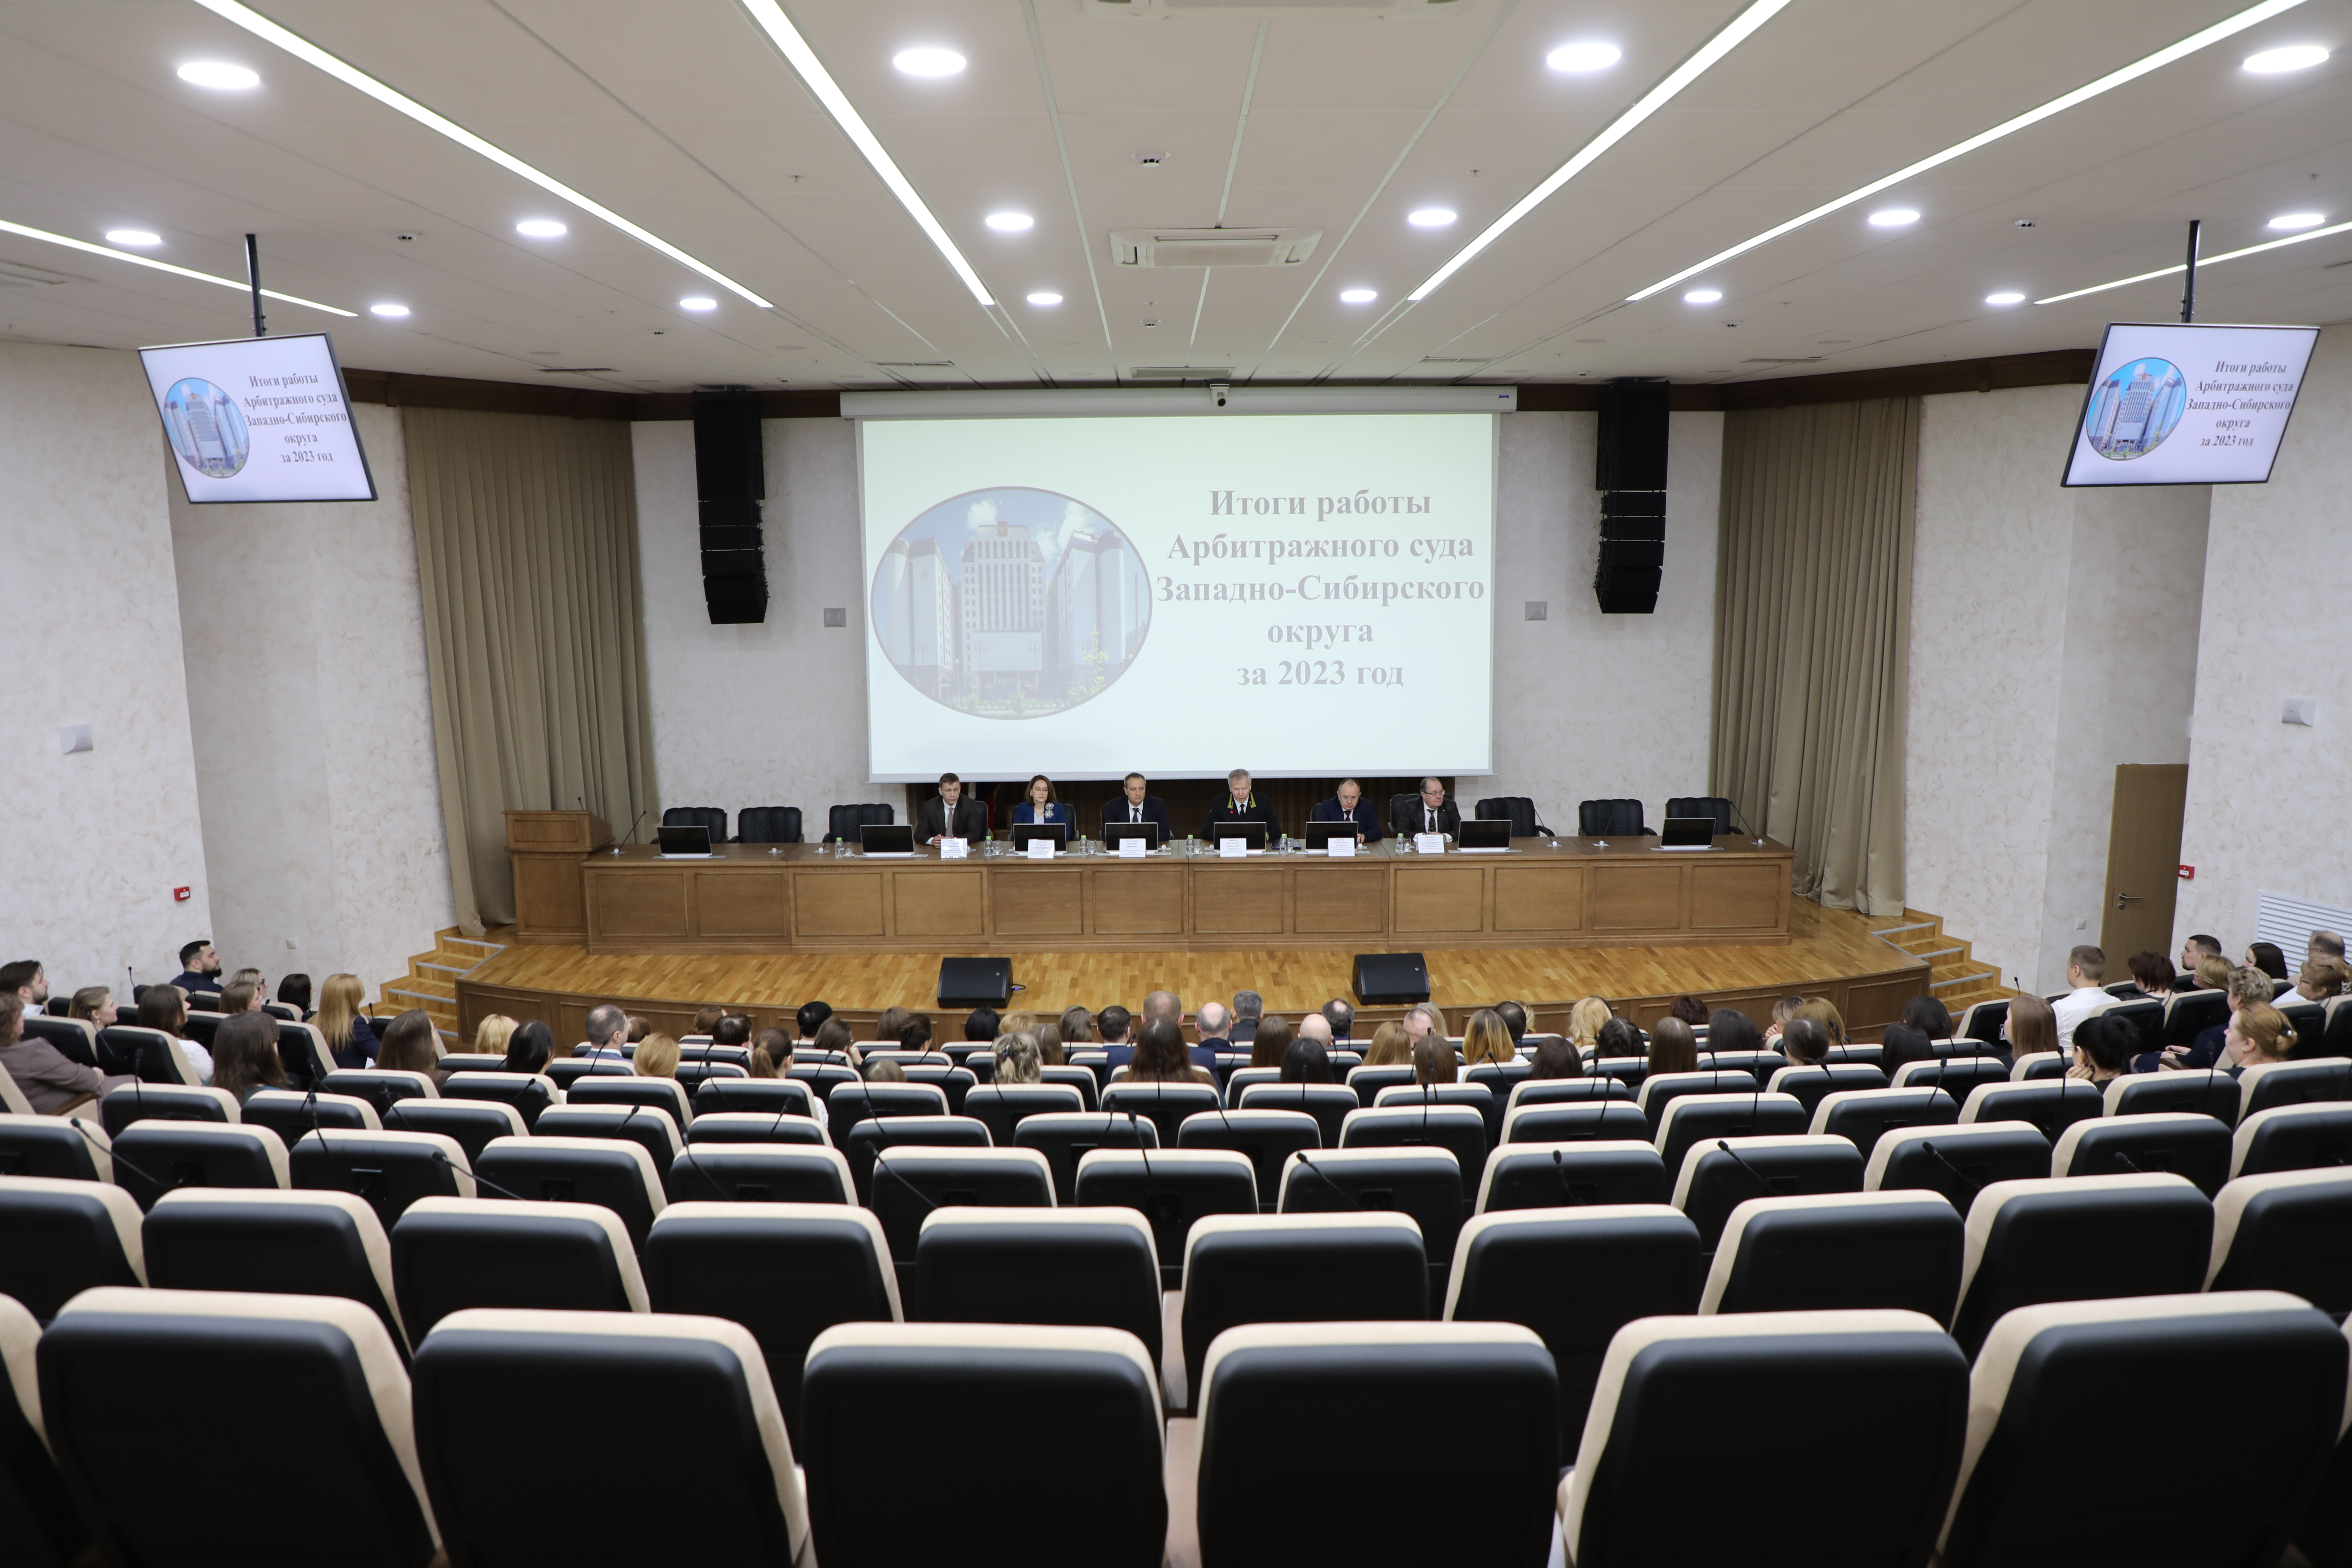 Арбитражным судом Западно-Сибирского округа подведены итоги работы за 2023 год